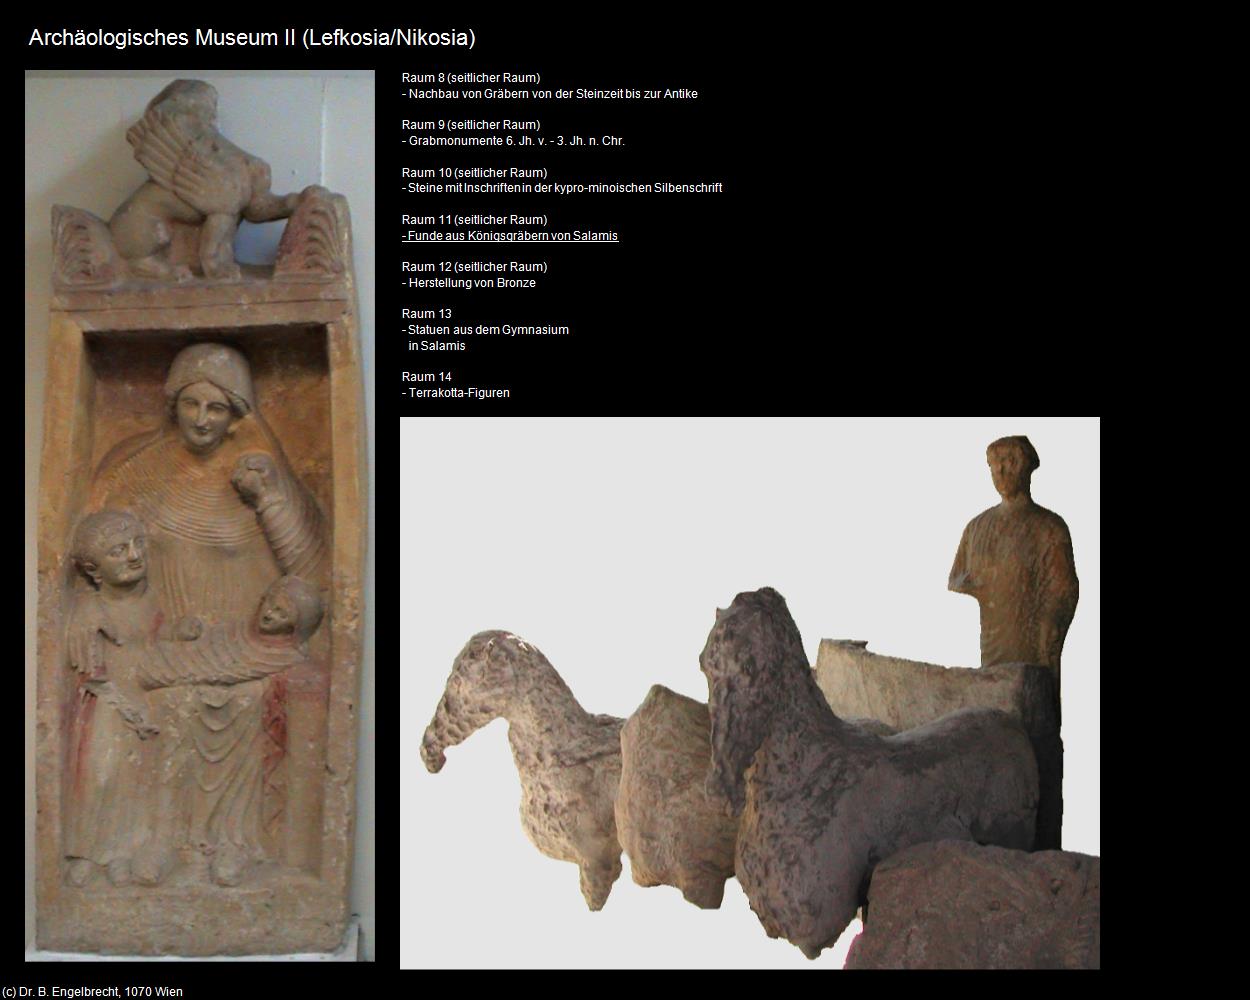 Archäologisches Museum II (Lefkosia-Nikosia/CY) in ZYPERN-Insel der Aphrodite(c)B.Engelbrecht